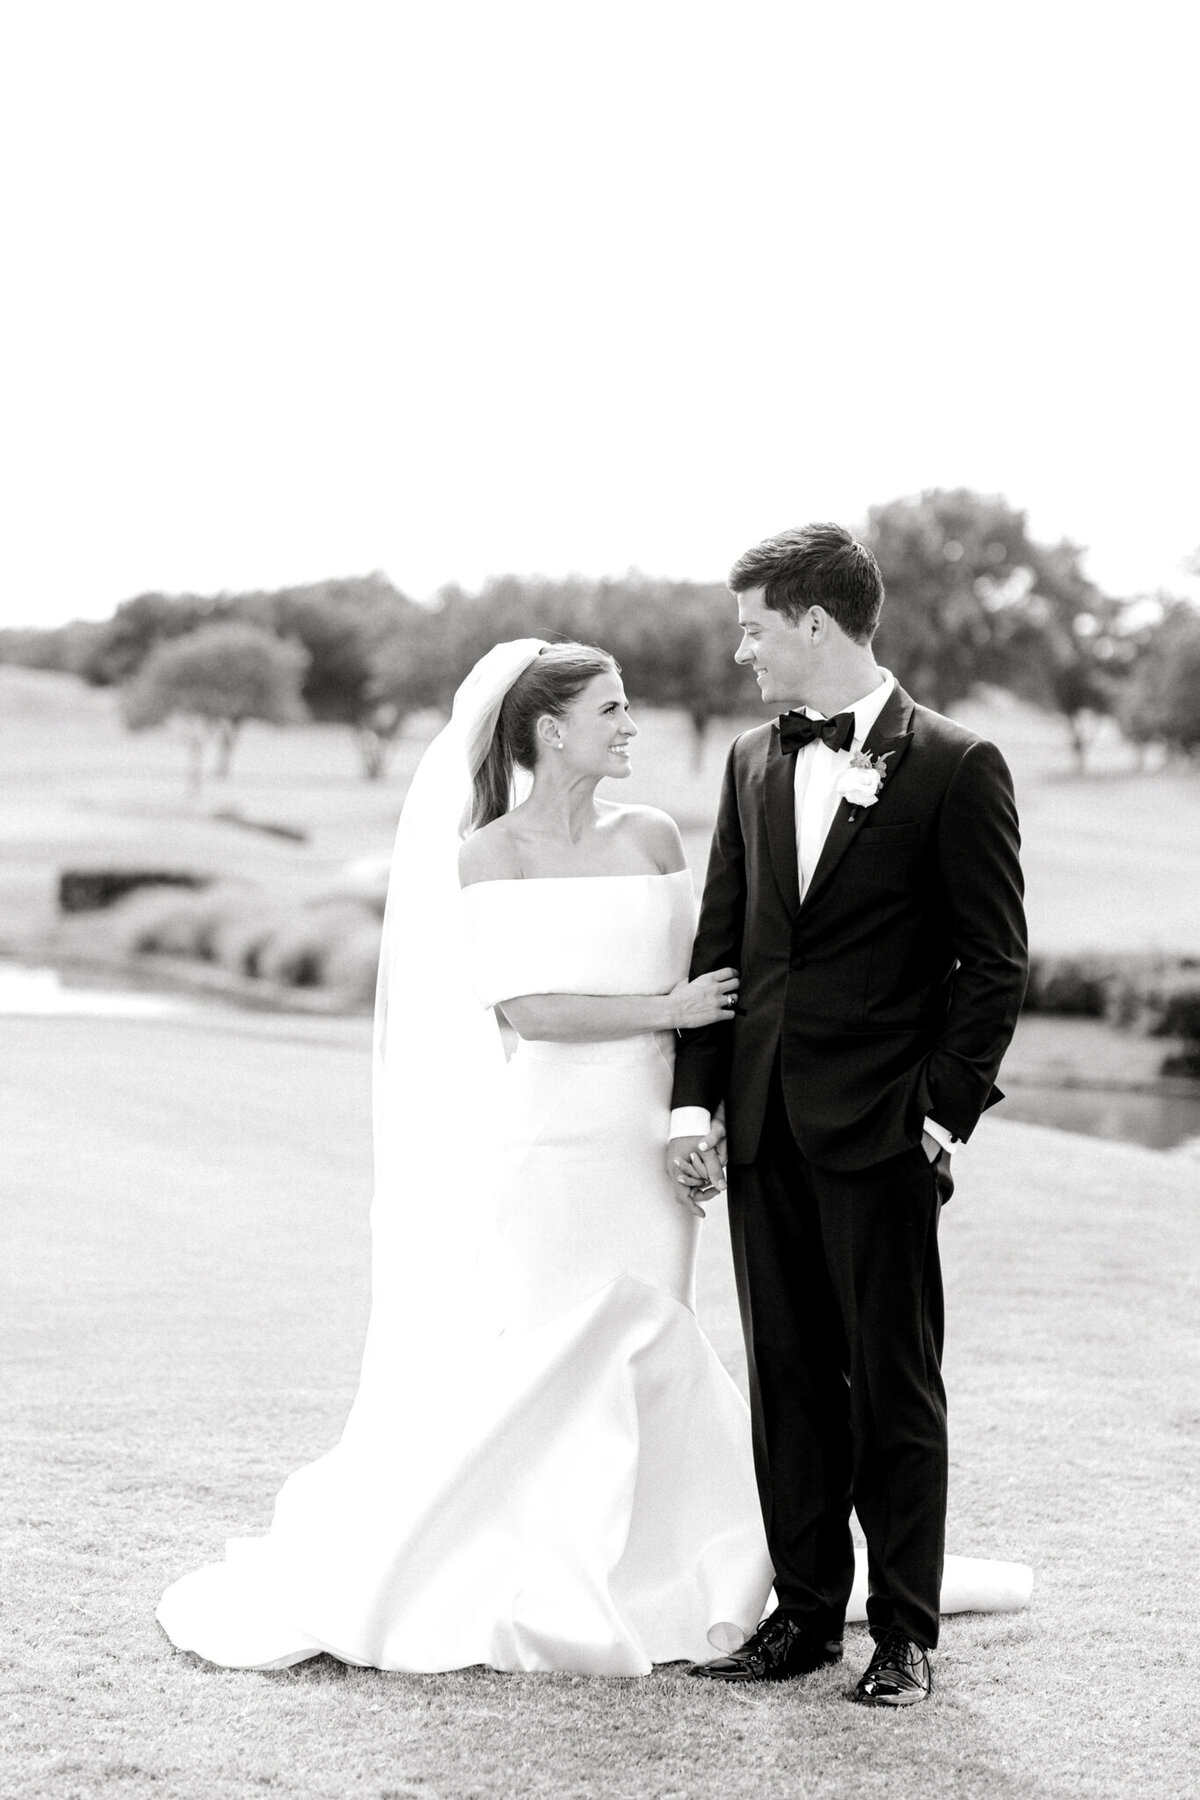 Annie & Logan's Wedding | Dallas Wedding Photographer | Sami Kathryn Photography-140